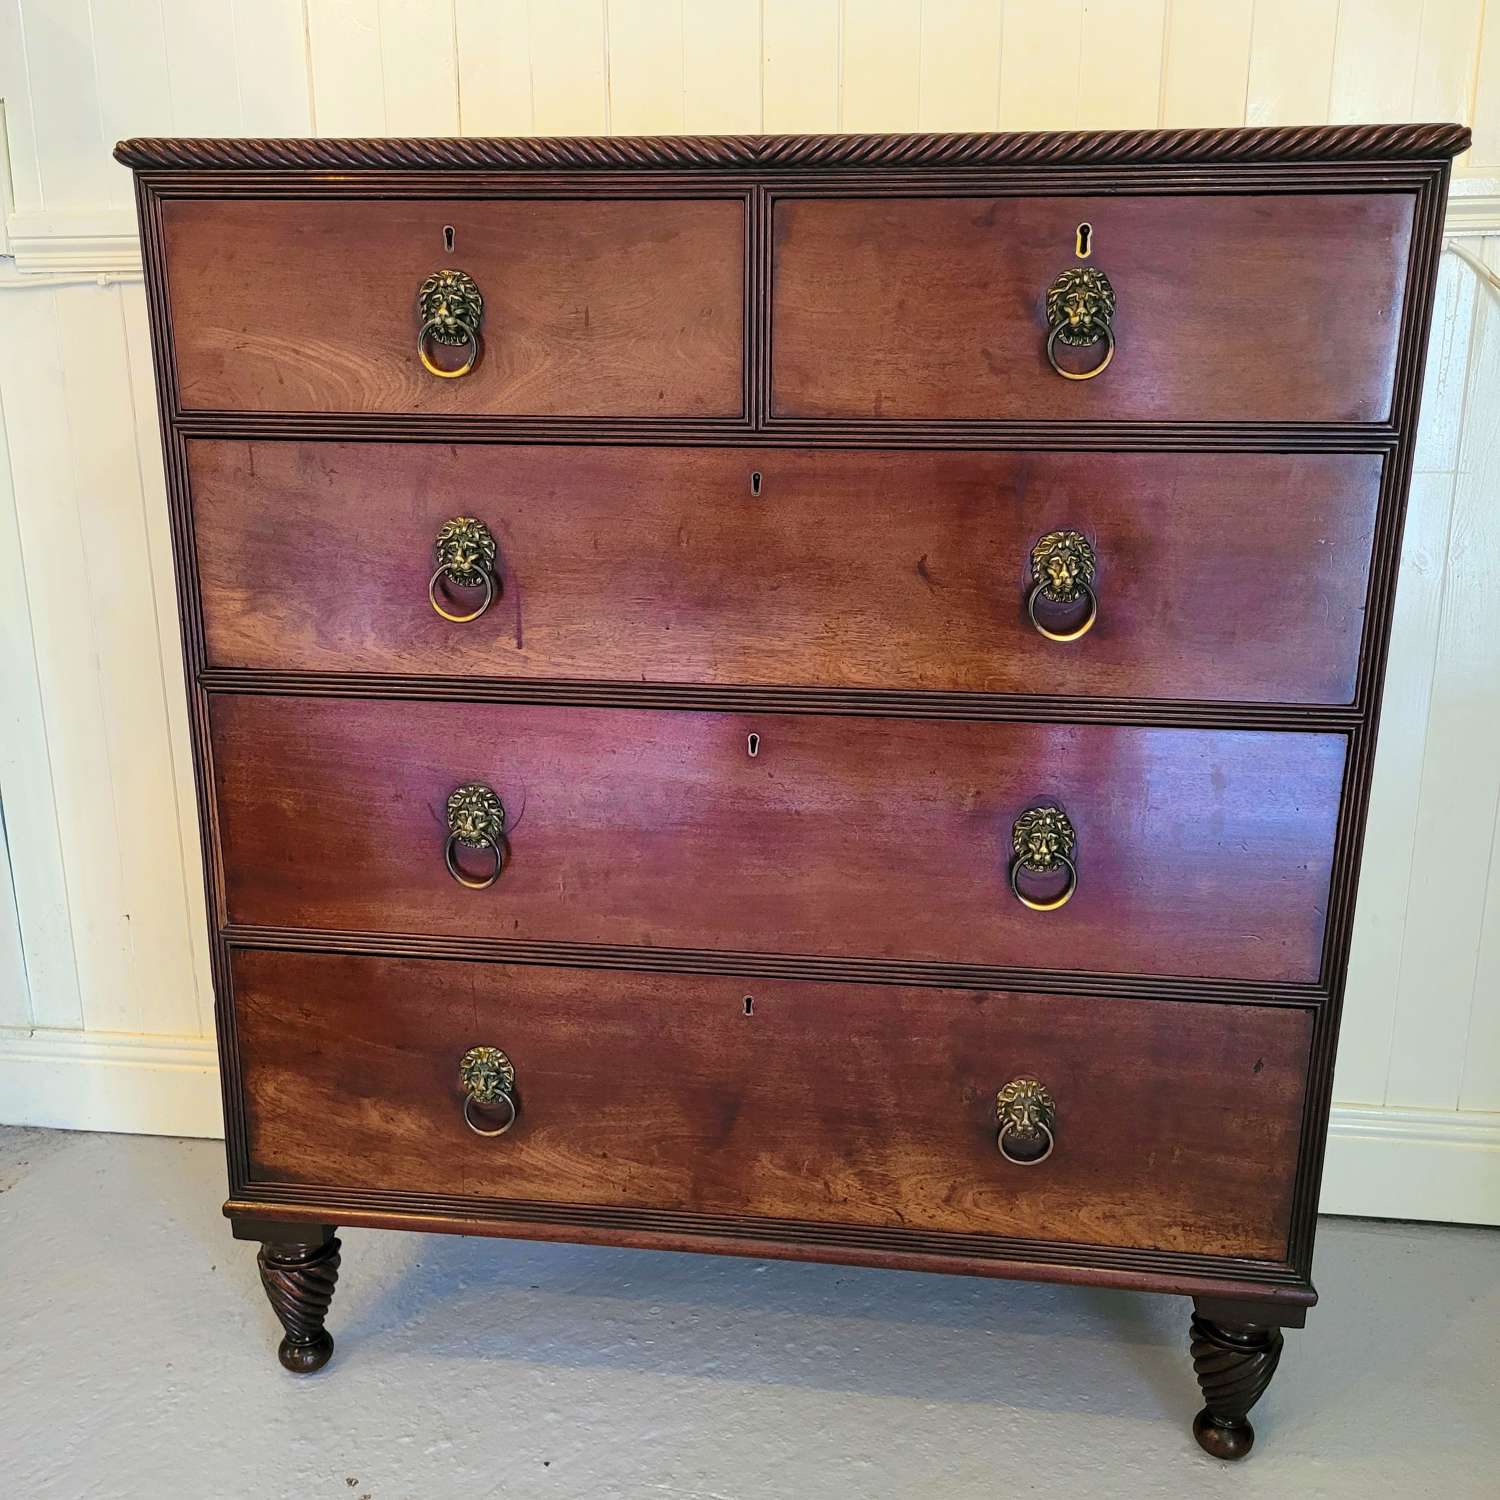 Irish 19th century Mahogany chest of drawers